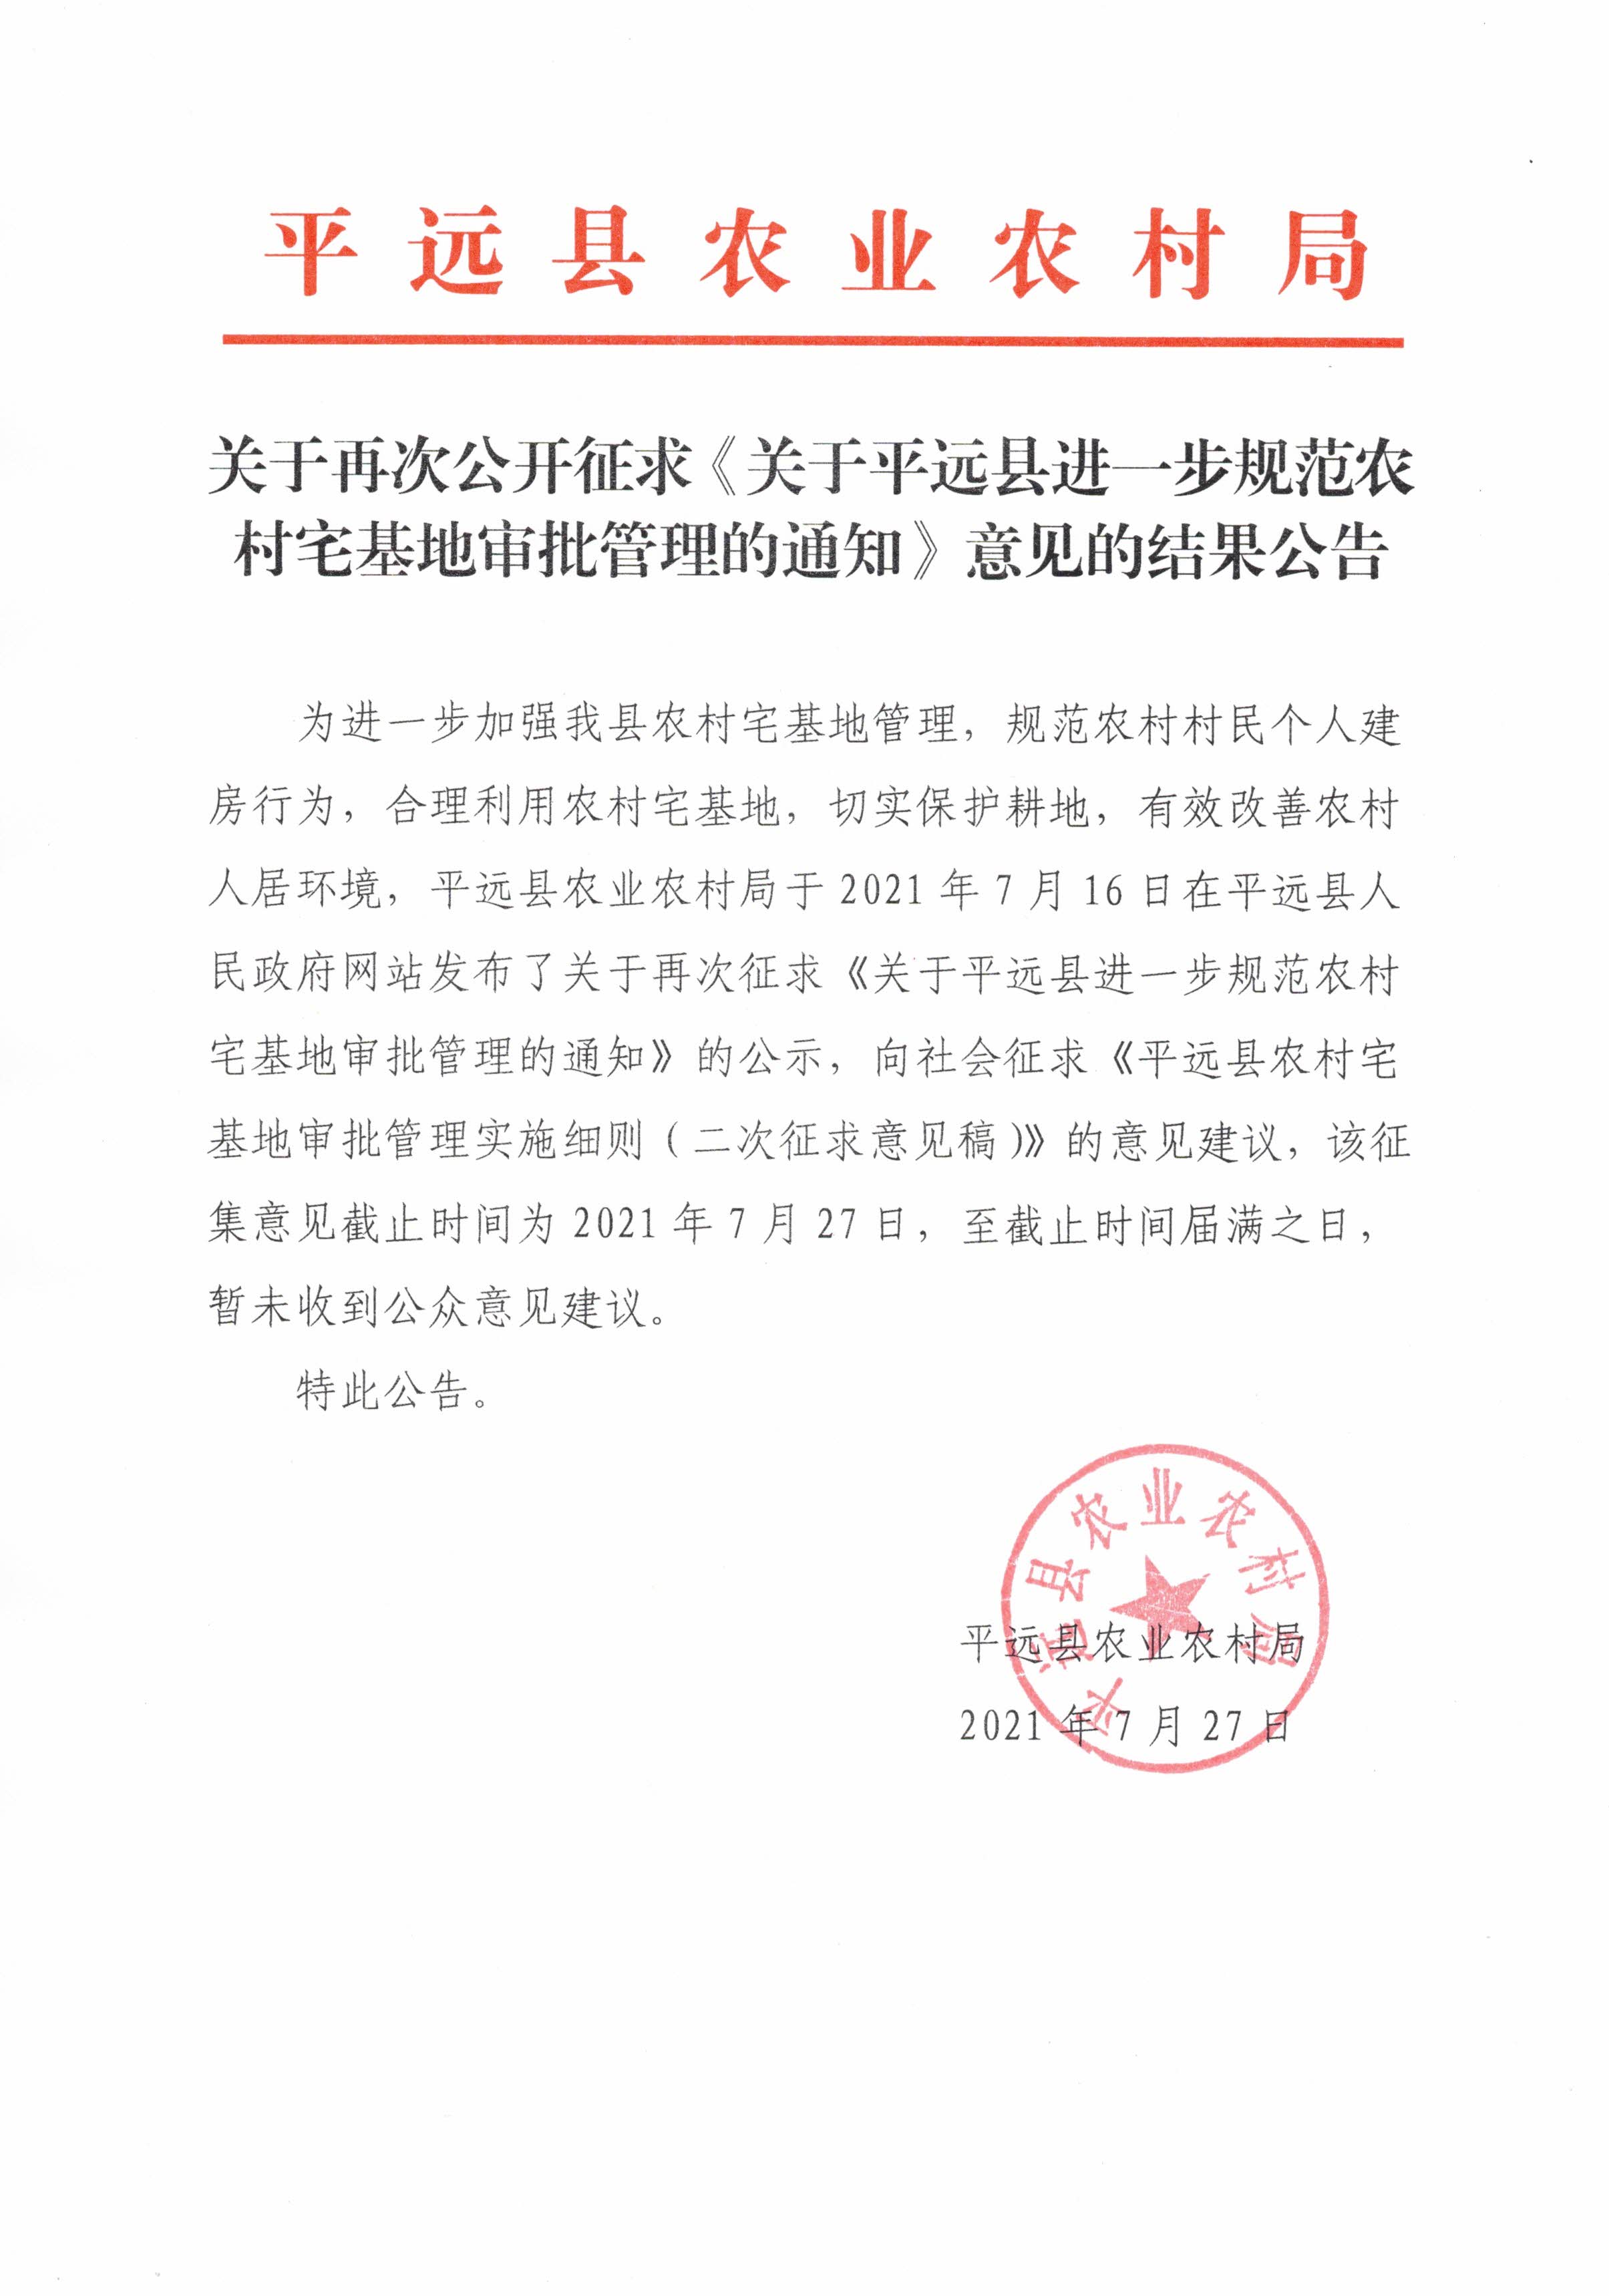 关于再次公开征求《关于平远县进一步规范农村宅基地审批管理的通知》意见的结果公告.jpg